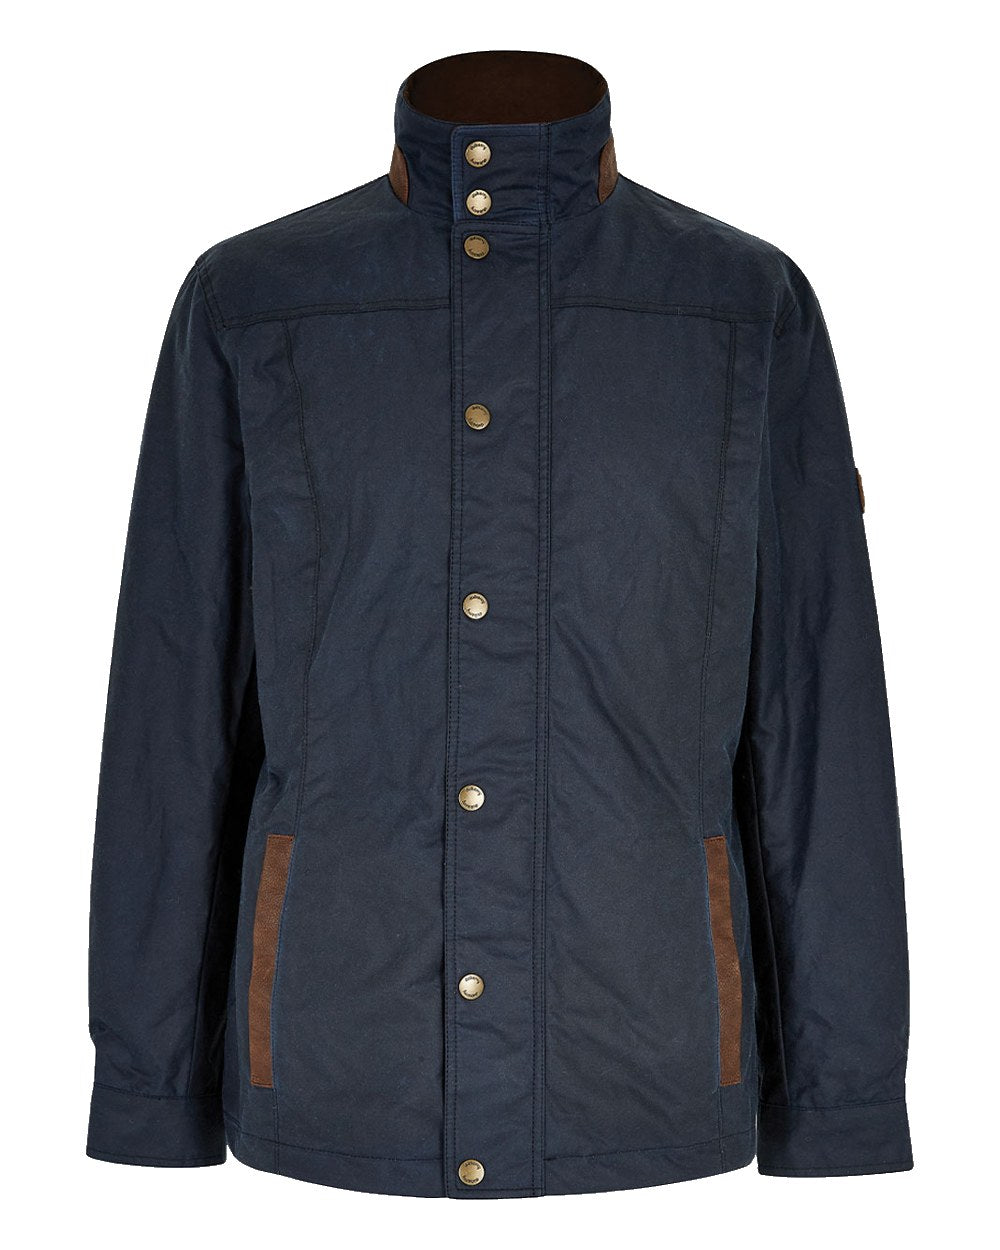 Dubarry Carrickfergus Waxed Jacket in Ocean Blue 